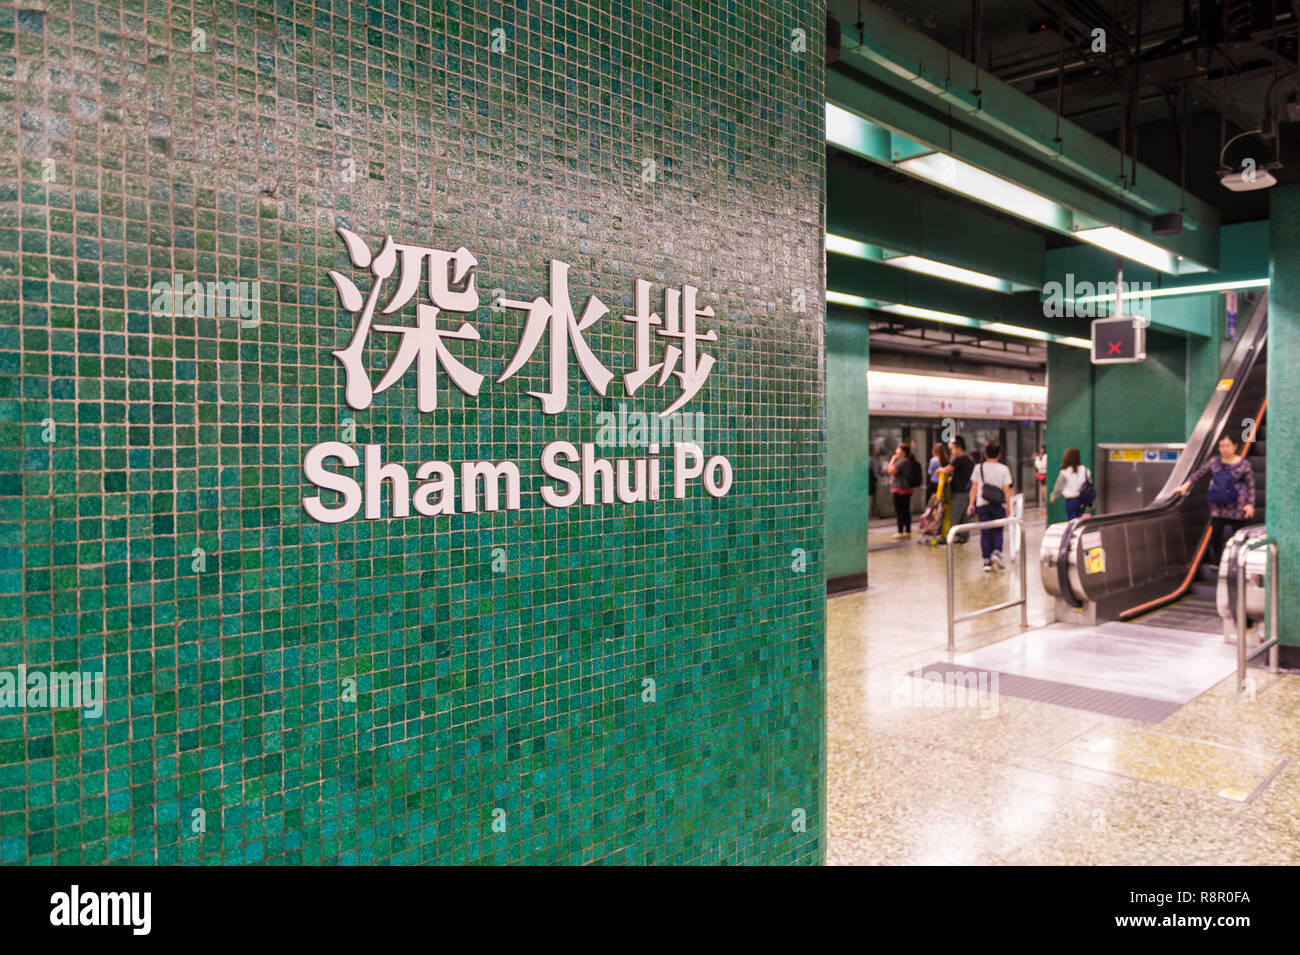 Sham Shui Po signe sur la mosaïque vert mur de la gare MTR Métro, Sham Shui Po, Kowloon, Hong Kong Banque D'Images